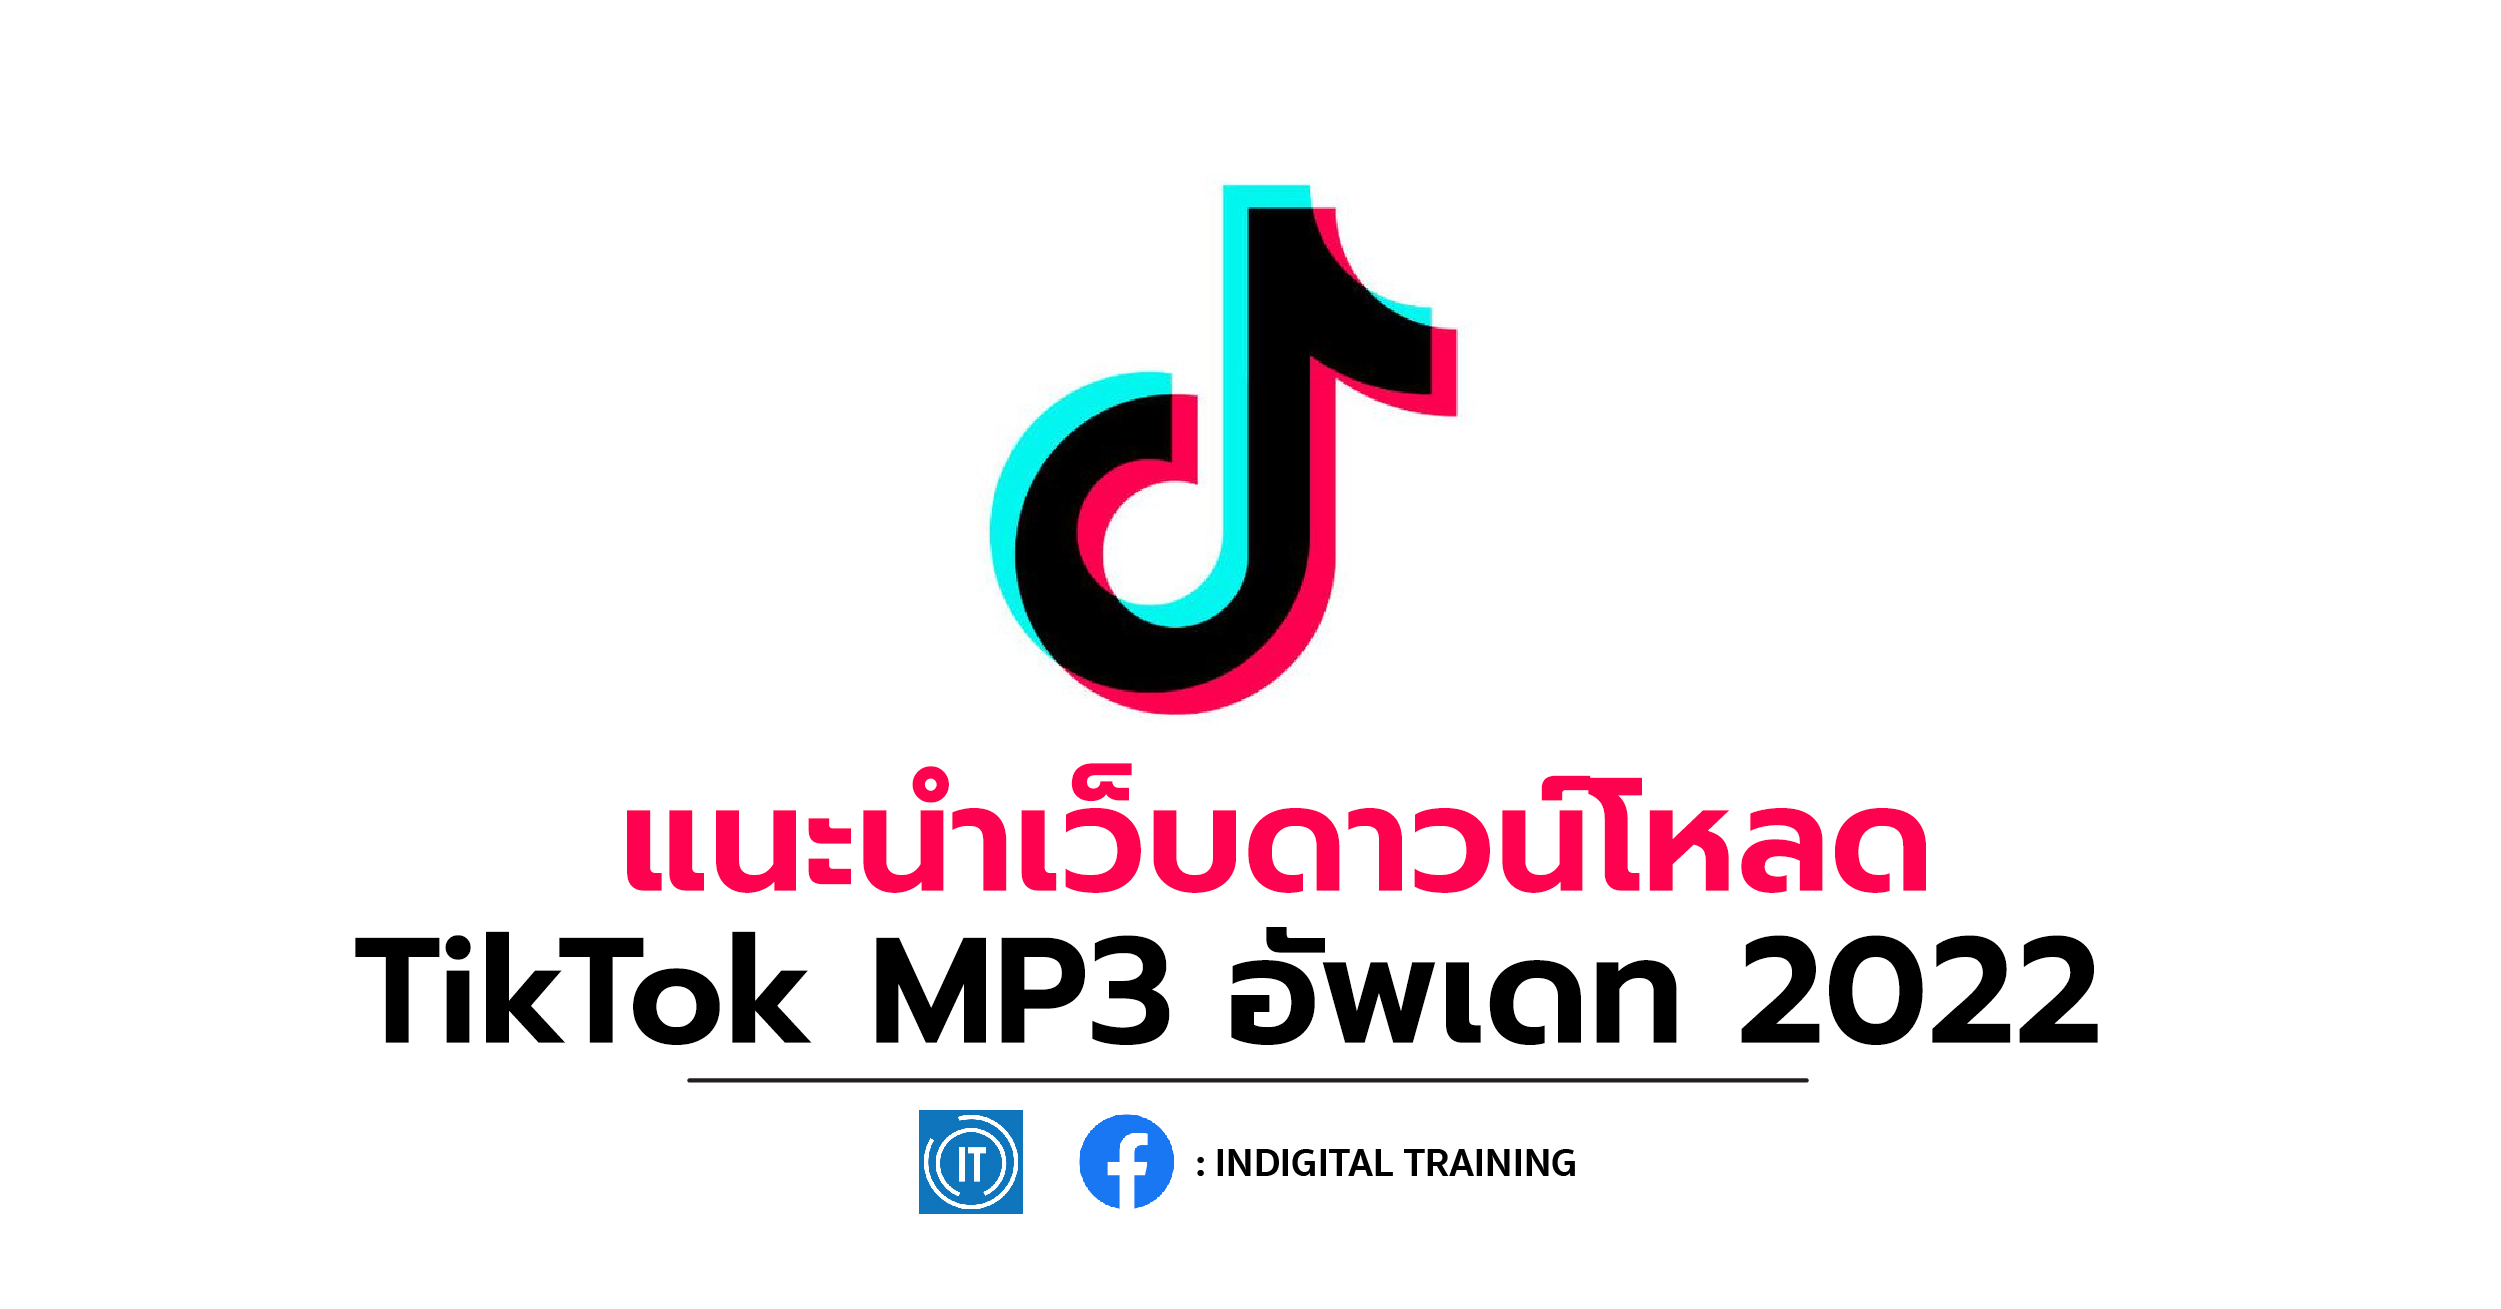 แนะนำเว็บดาวน์โหลด TikTok MP3 อัพเดท 2022